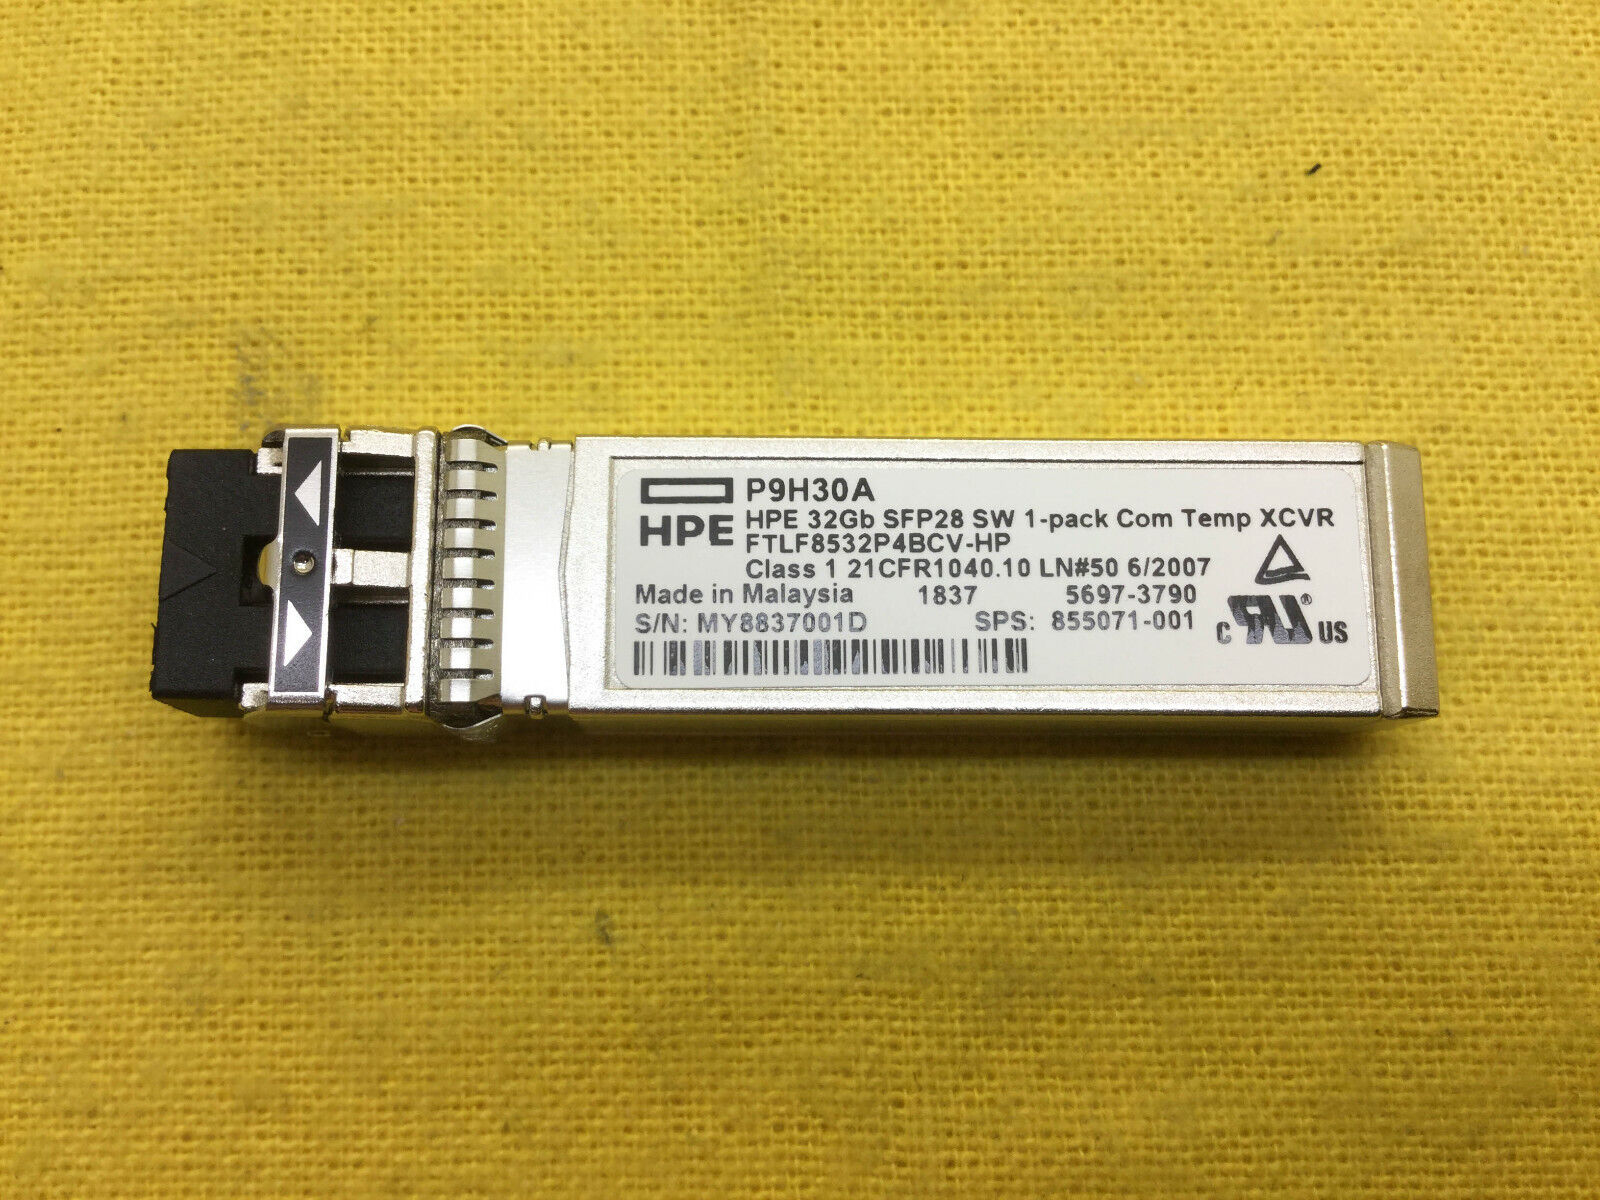 Genuine HPE P9H30A  32G SFP+ 855071-001 FOR 868141-001, P9M76A